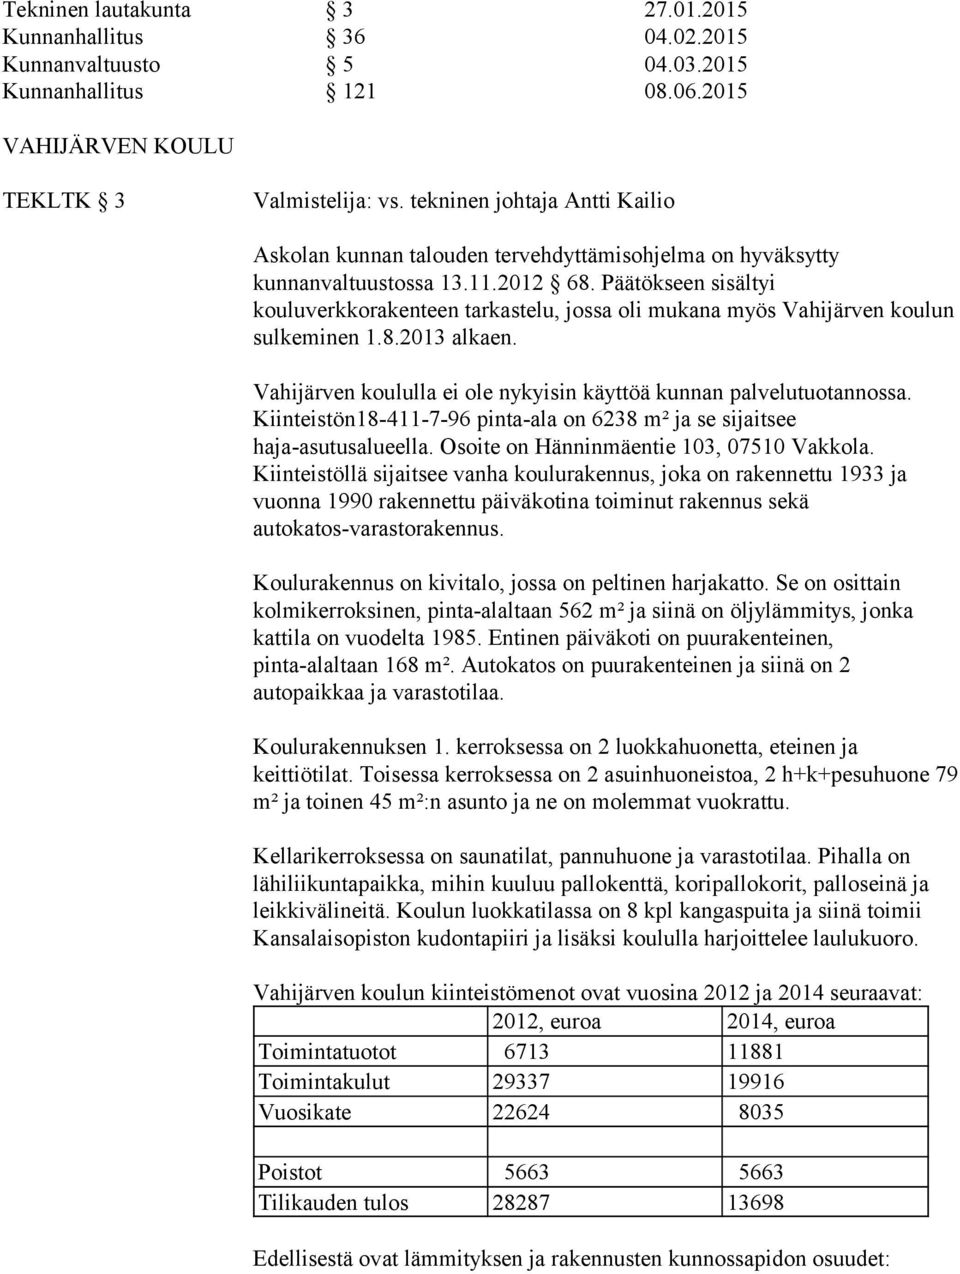 Päätökseen sisältyi kouluverkkorakenteen tarkastelu, jossa oli mukana myös Vahijärven koulun sulkeminen 1.8.2013 alkaen. Vahijärven koululla ei ole nykyisin käyttöä kunnan palvelutuotannossa.